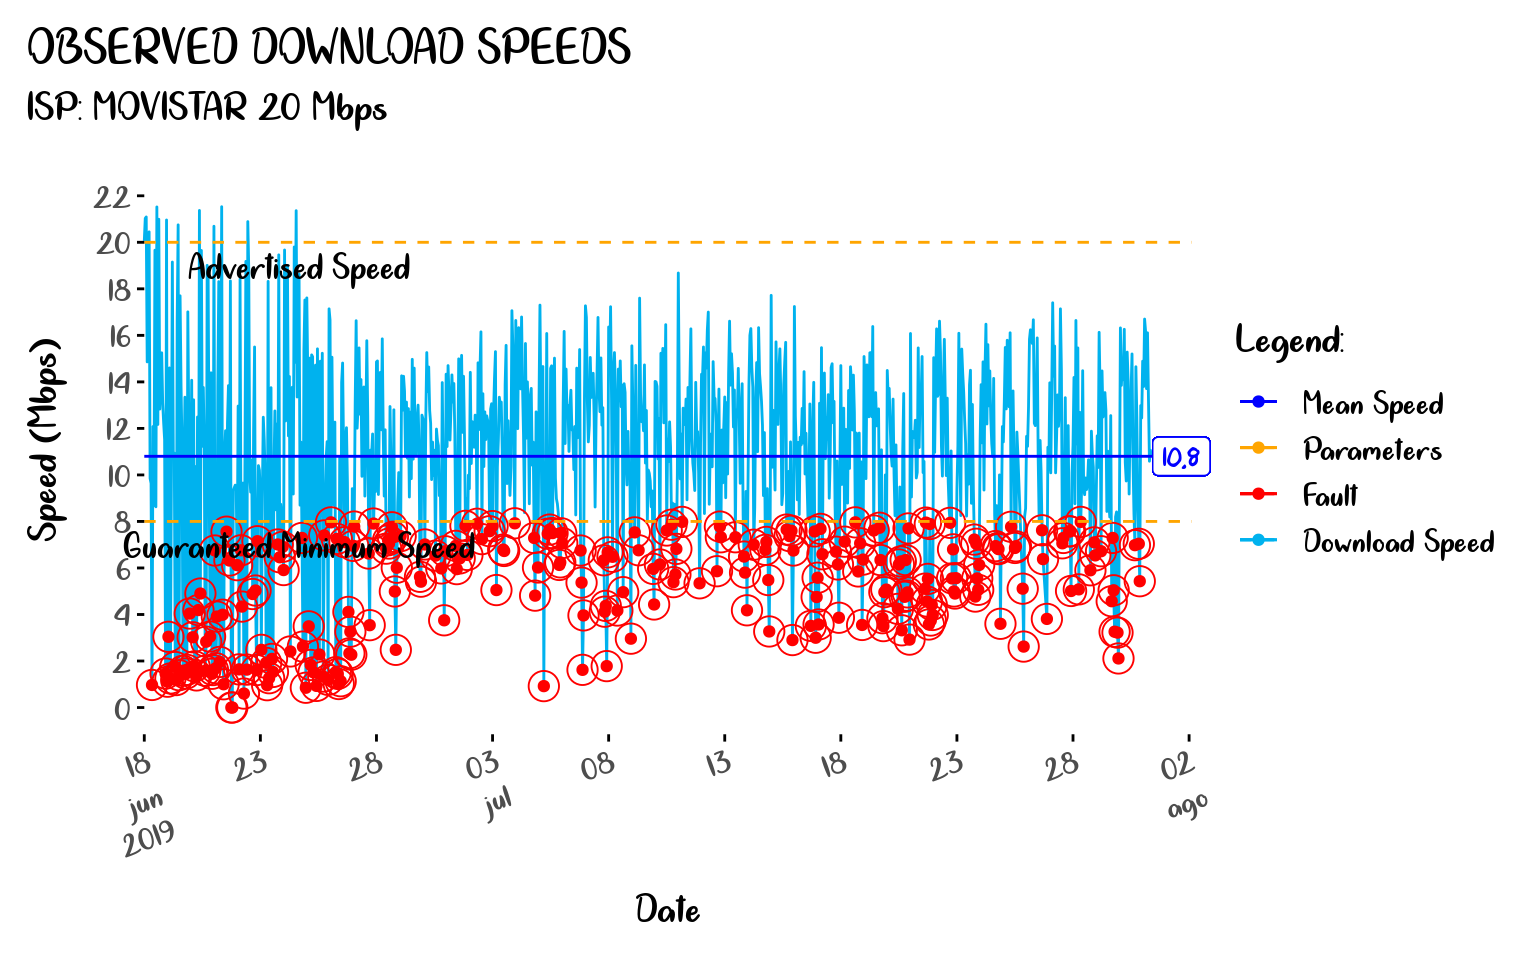 Observed Download Speeds